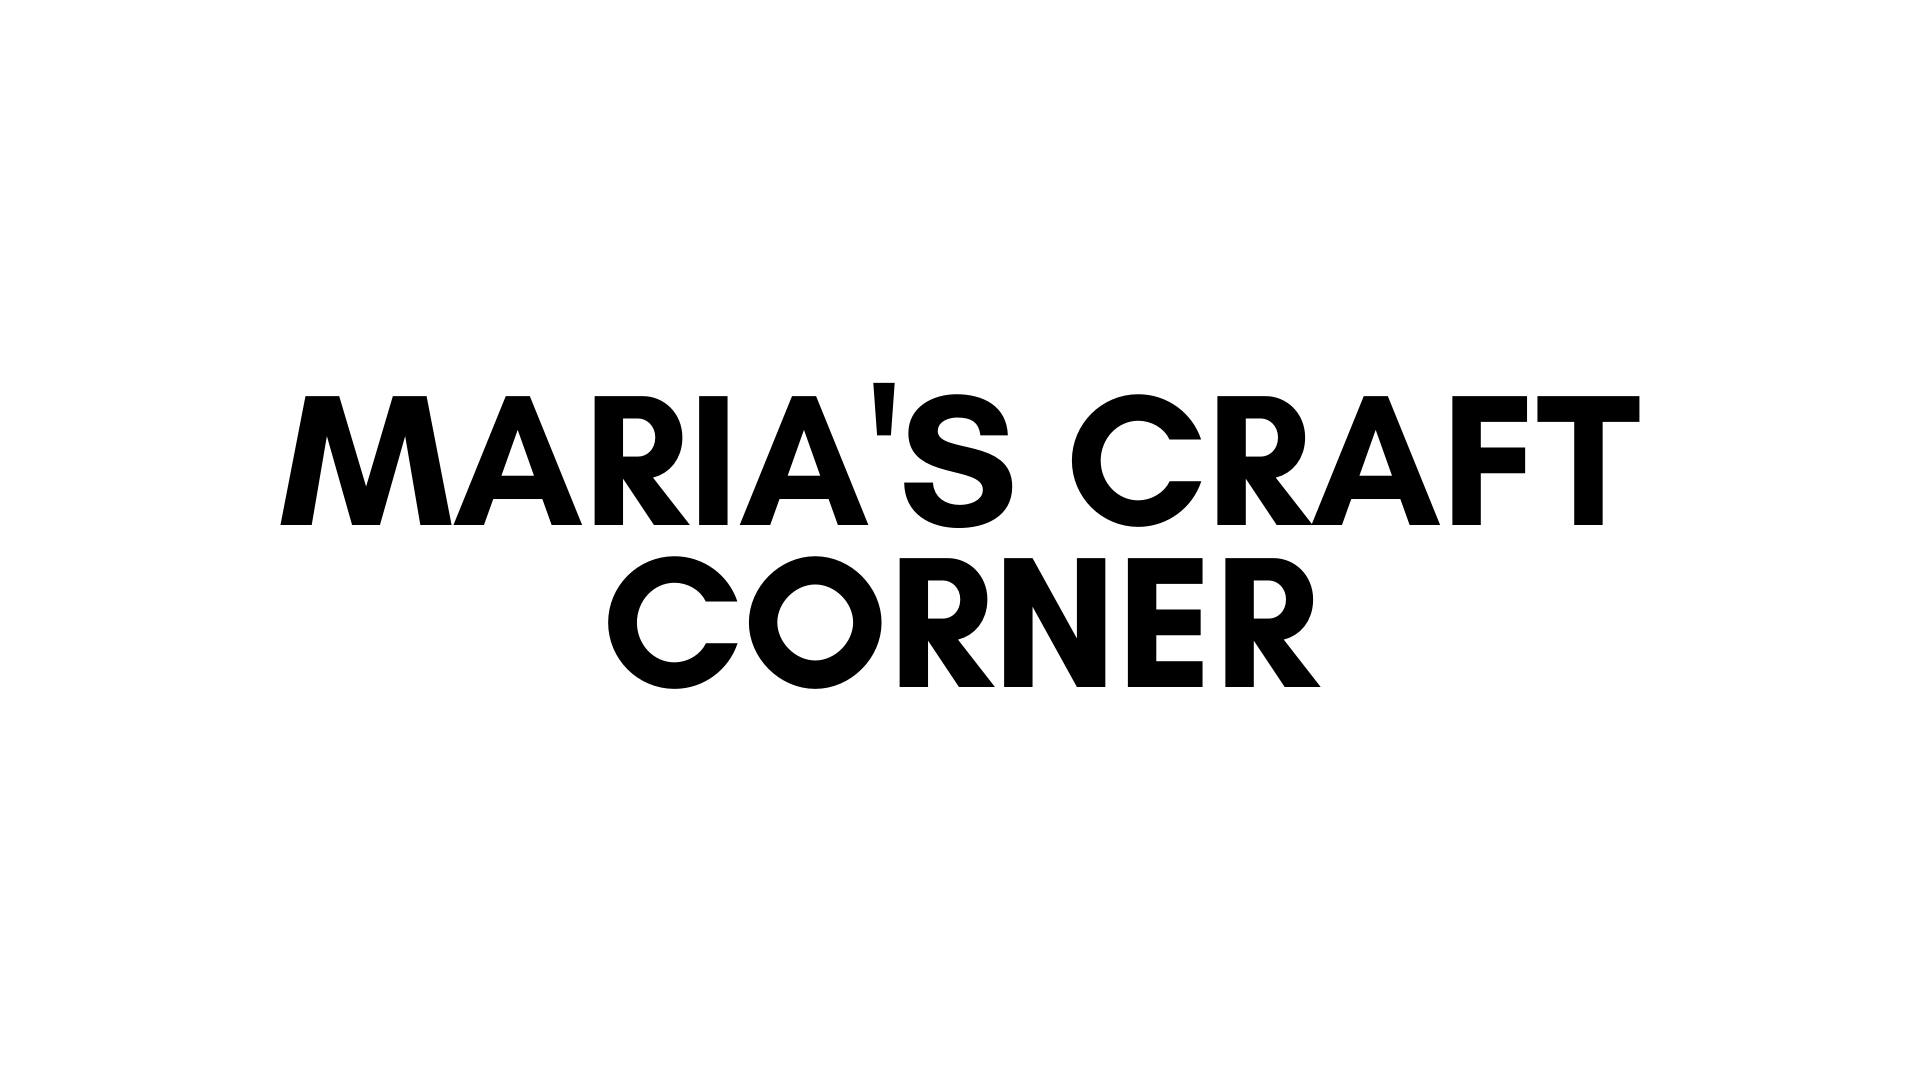 MARIA'S CRAFT CORNER